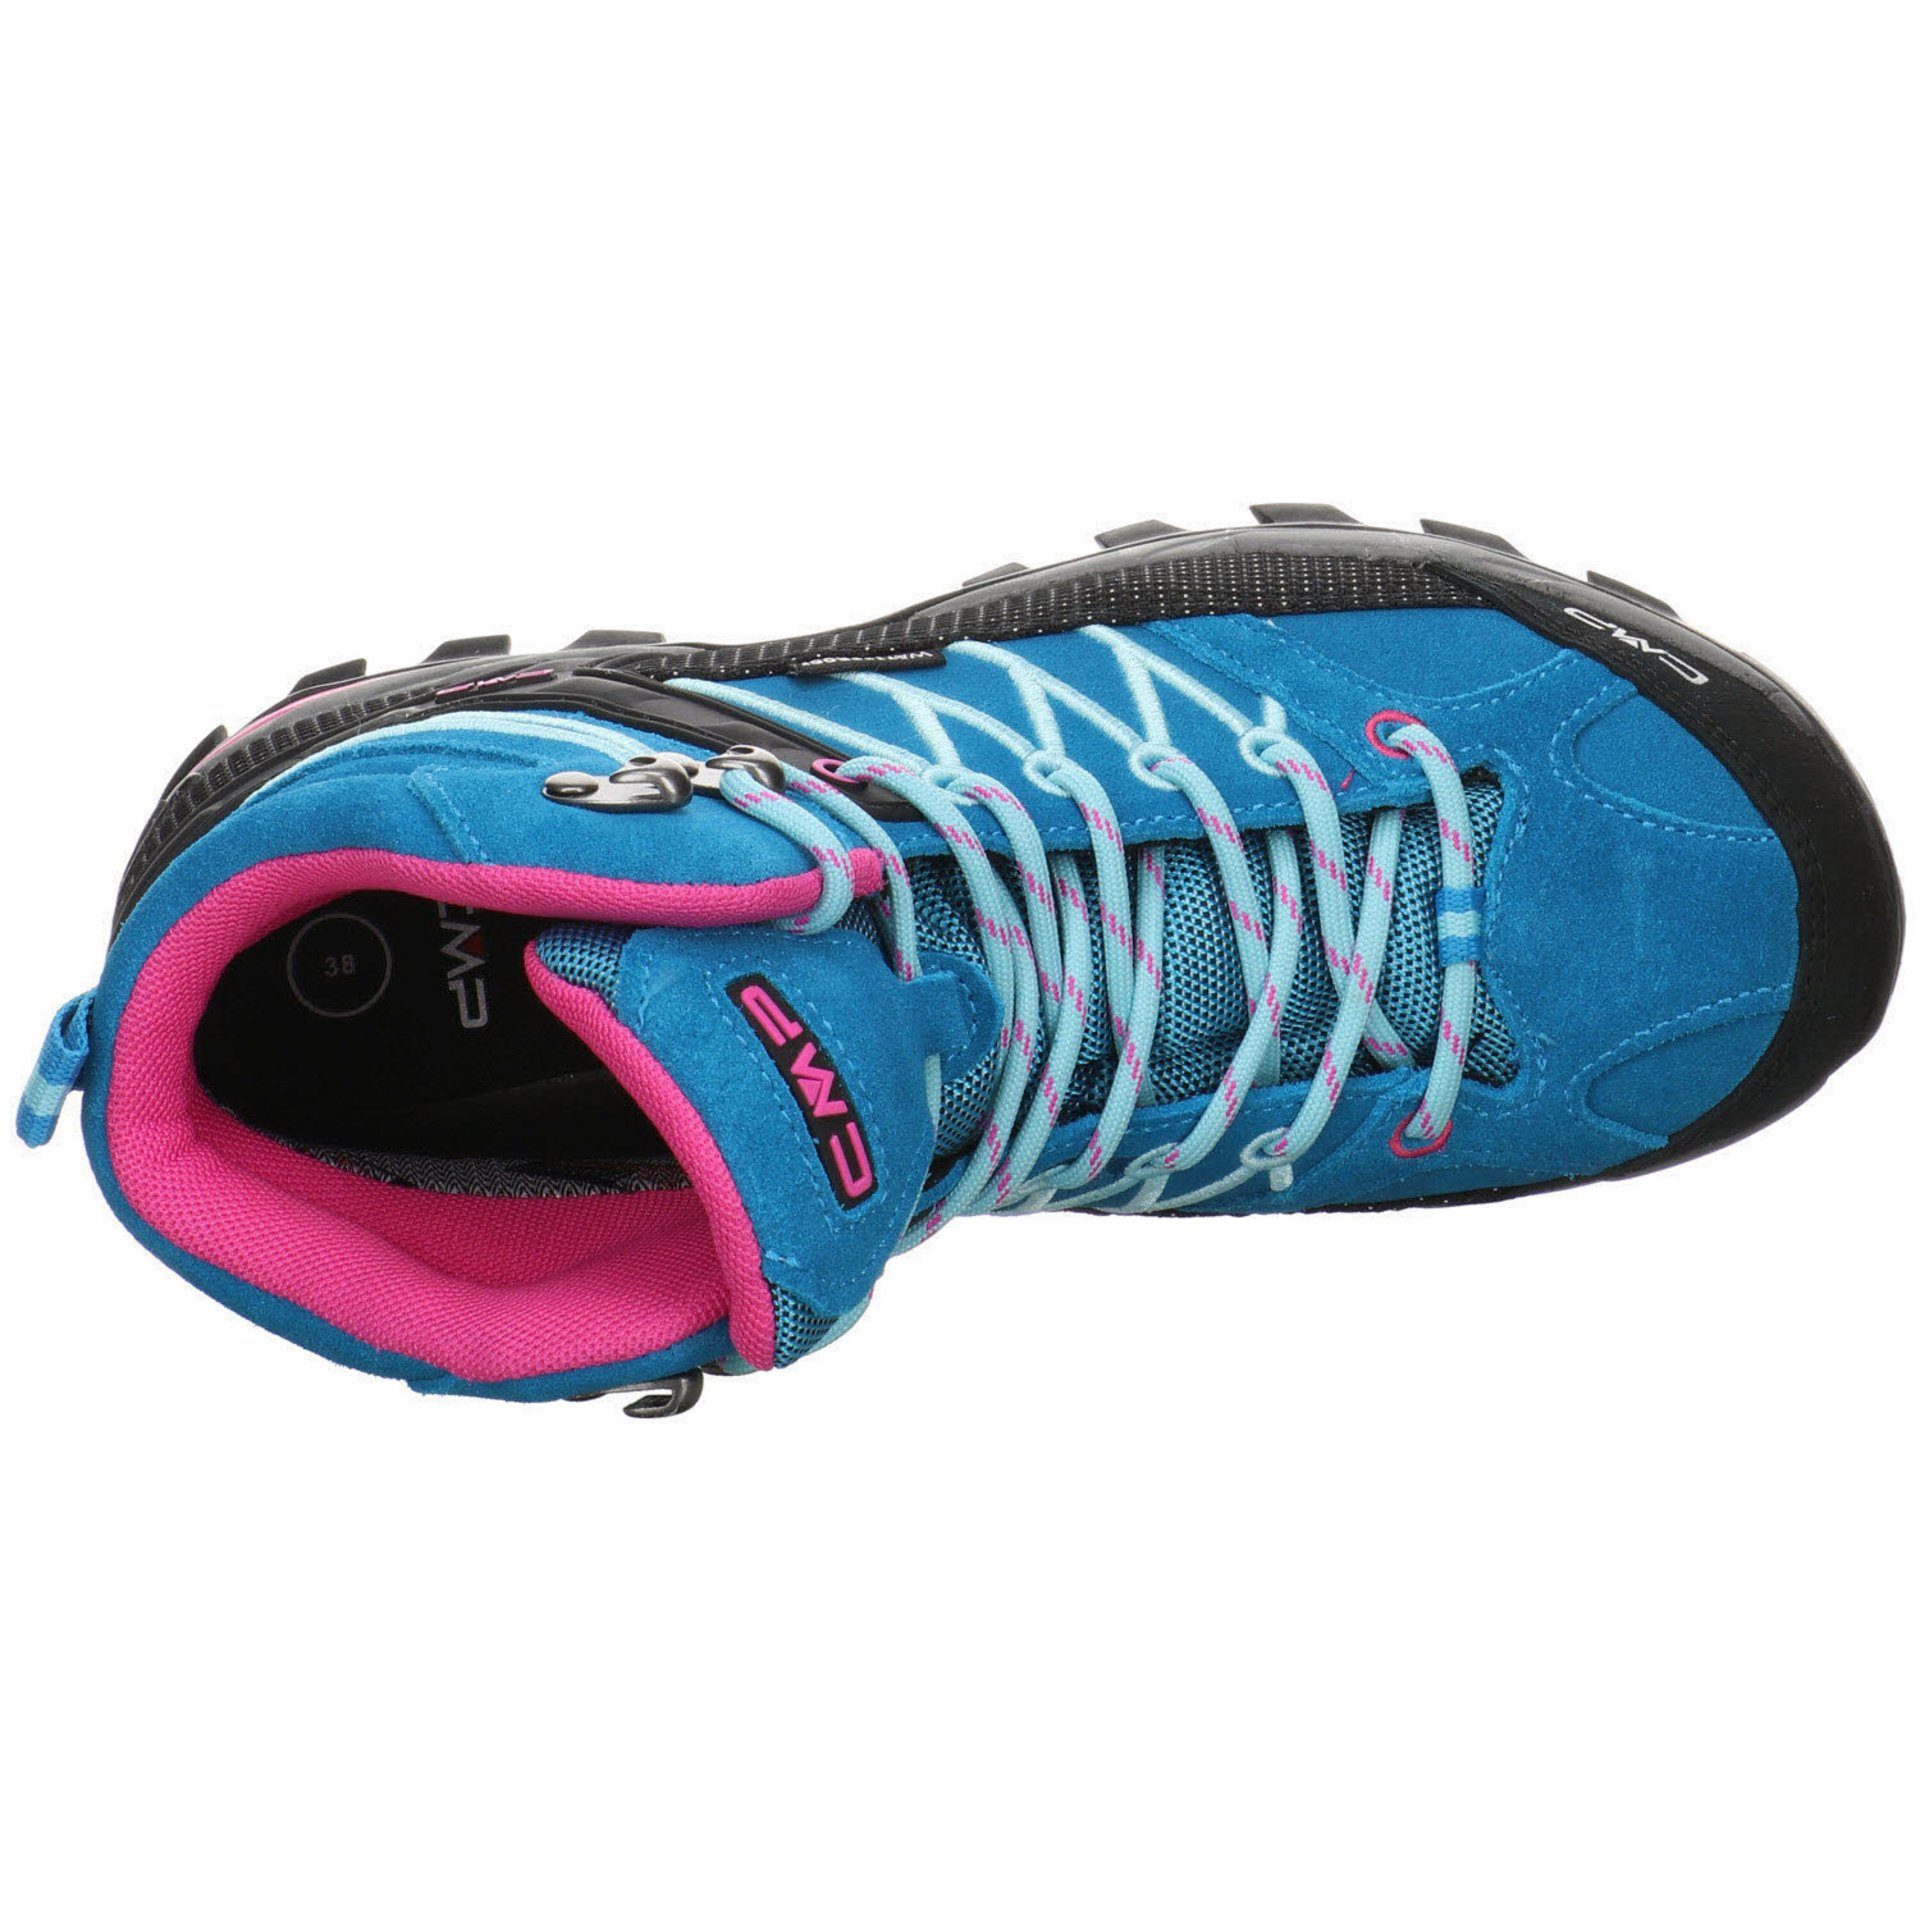 CMP Damen Mid Rigel Outdoorschuh türkis-pink Leder-/Textilkombination Schuhe Outdoorschuh Outdoor